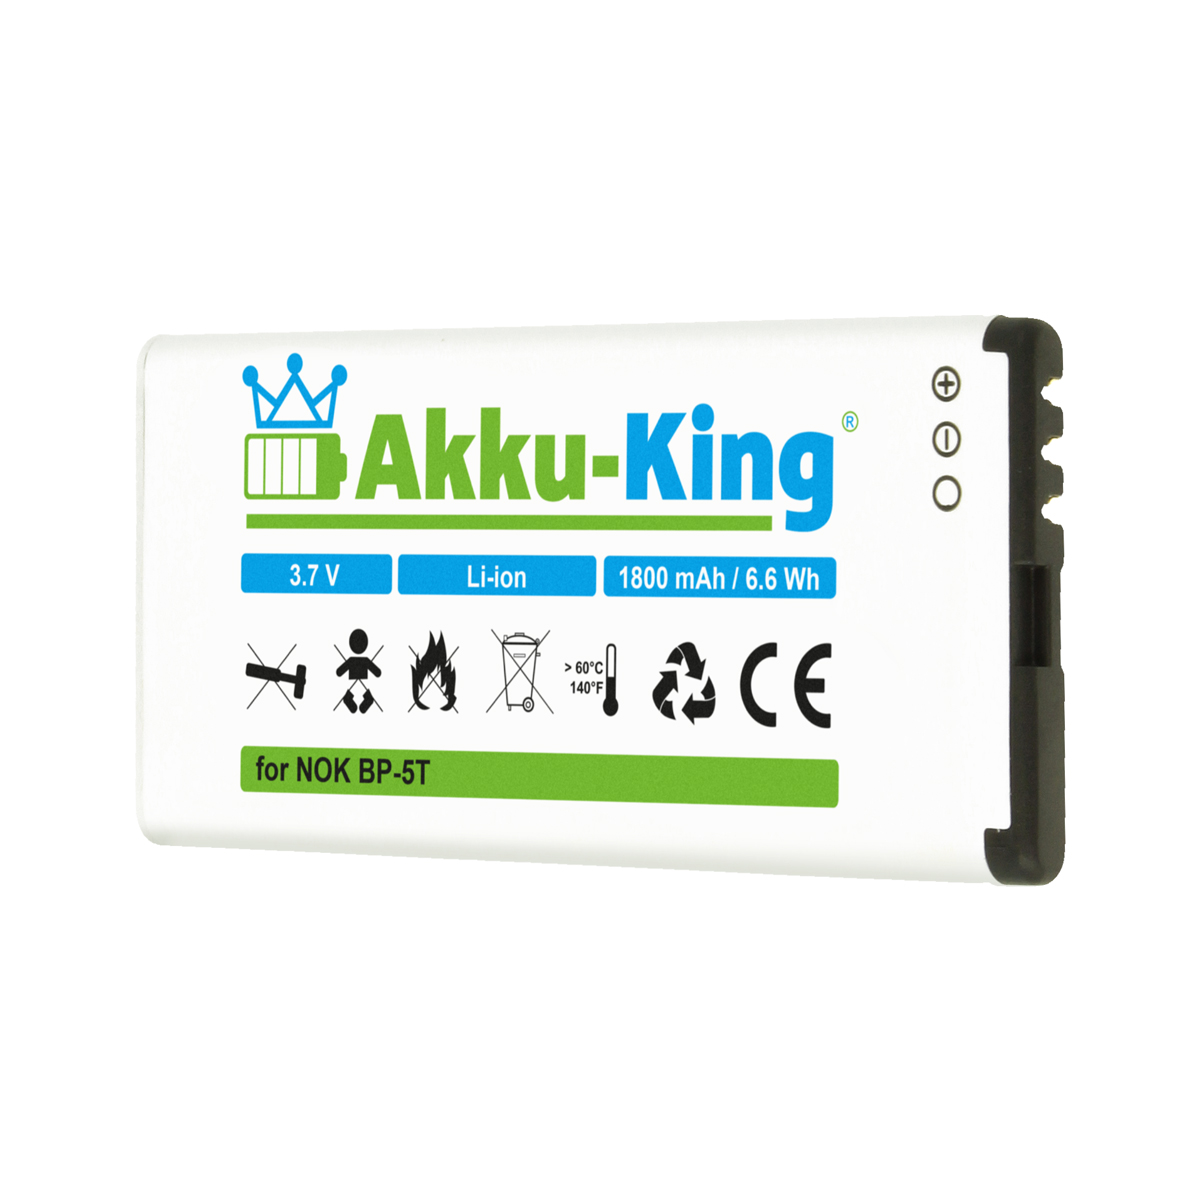 1800mAh Volt, mit BP-5T kompatibel 3.7 Akku Li-Ion Nokia AKKU-KING Handy-Akku,